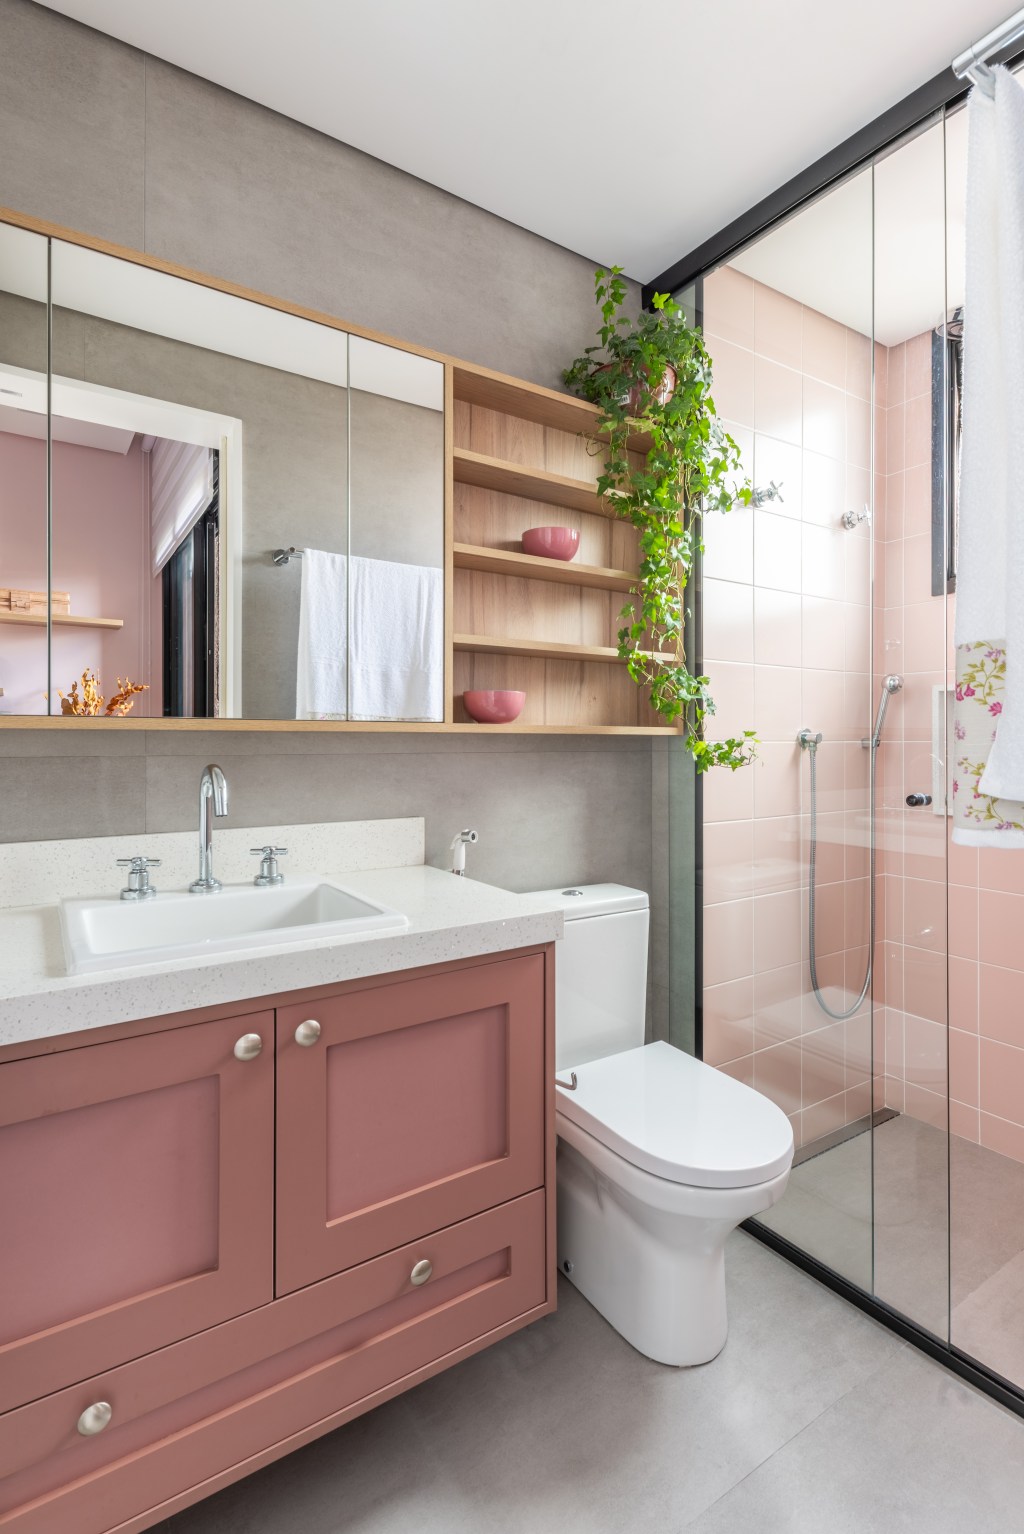 Projeto de Pietro Terlizzi. Na foto, banheiro com marcenaria rosa, armários aéreos espelhados, box de vidro, armário rosa, box revestido de azulejos rosa.